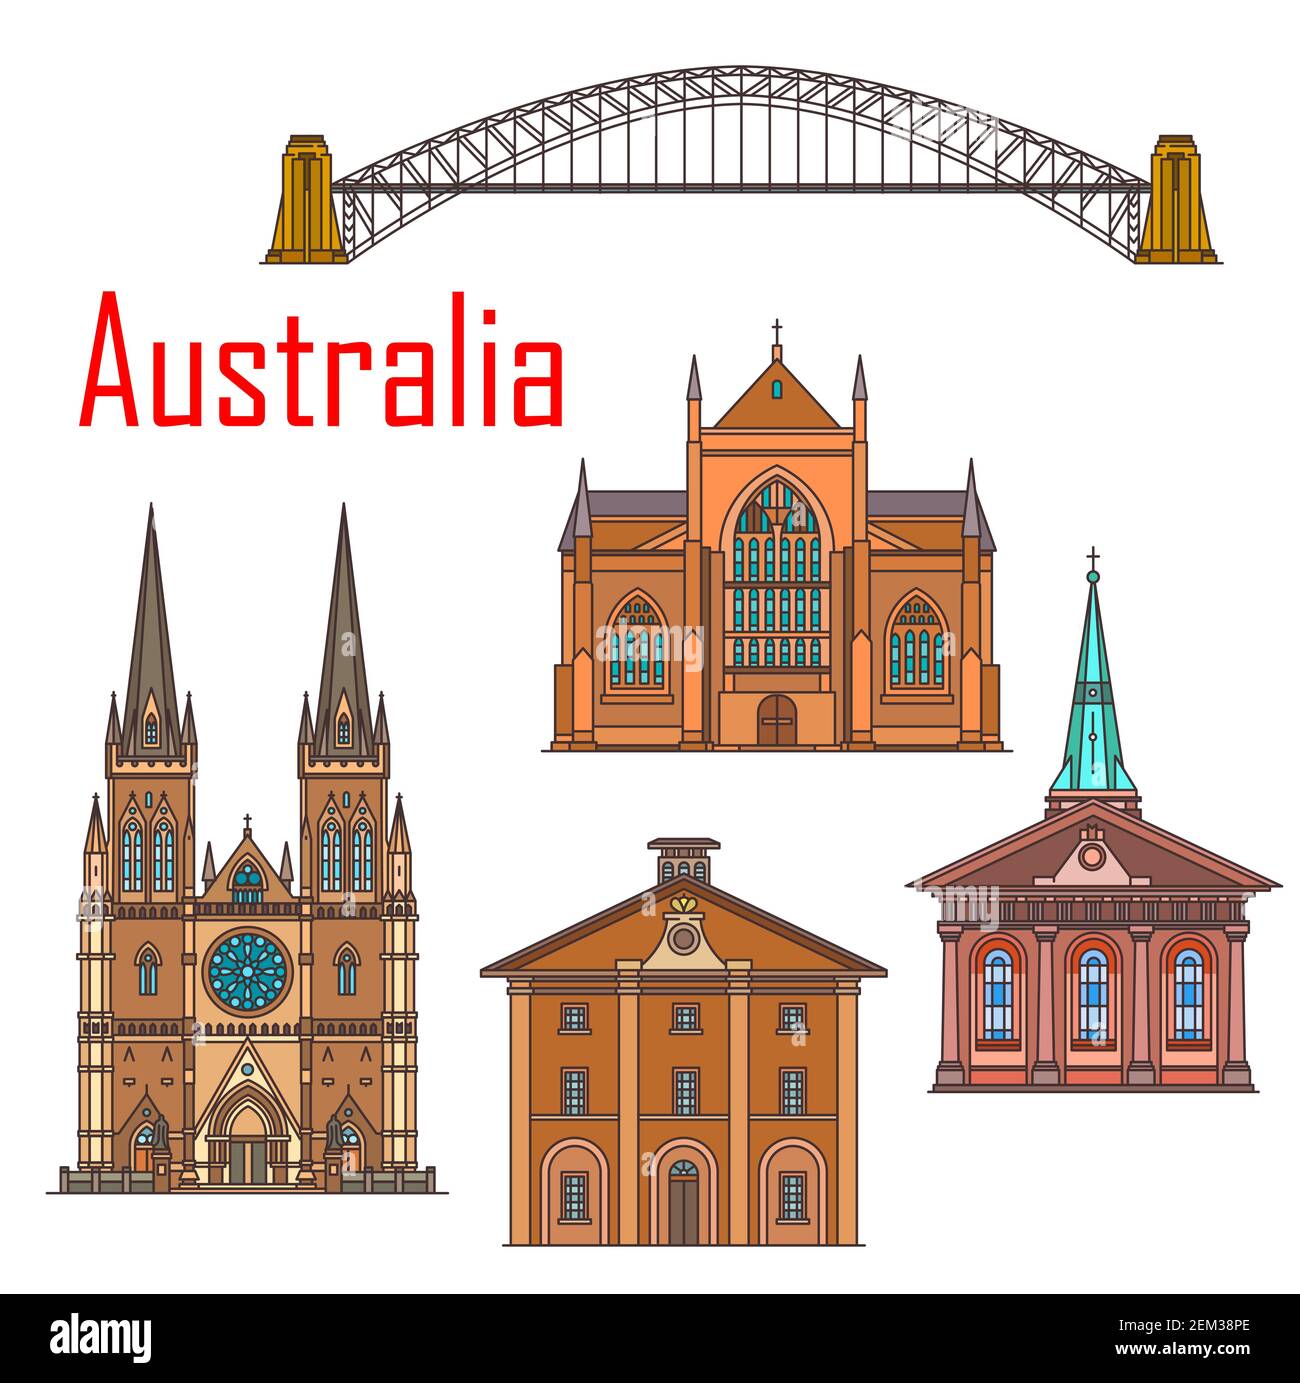 Monuments architecturaux d'Australie, célèbres bâtiments historiques de Sydney. Église Vector St Mary and James, cathédrale Saint Andrews, pont du port australien Illustration de Vecteur